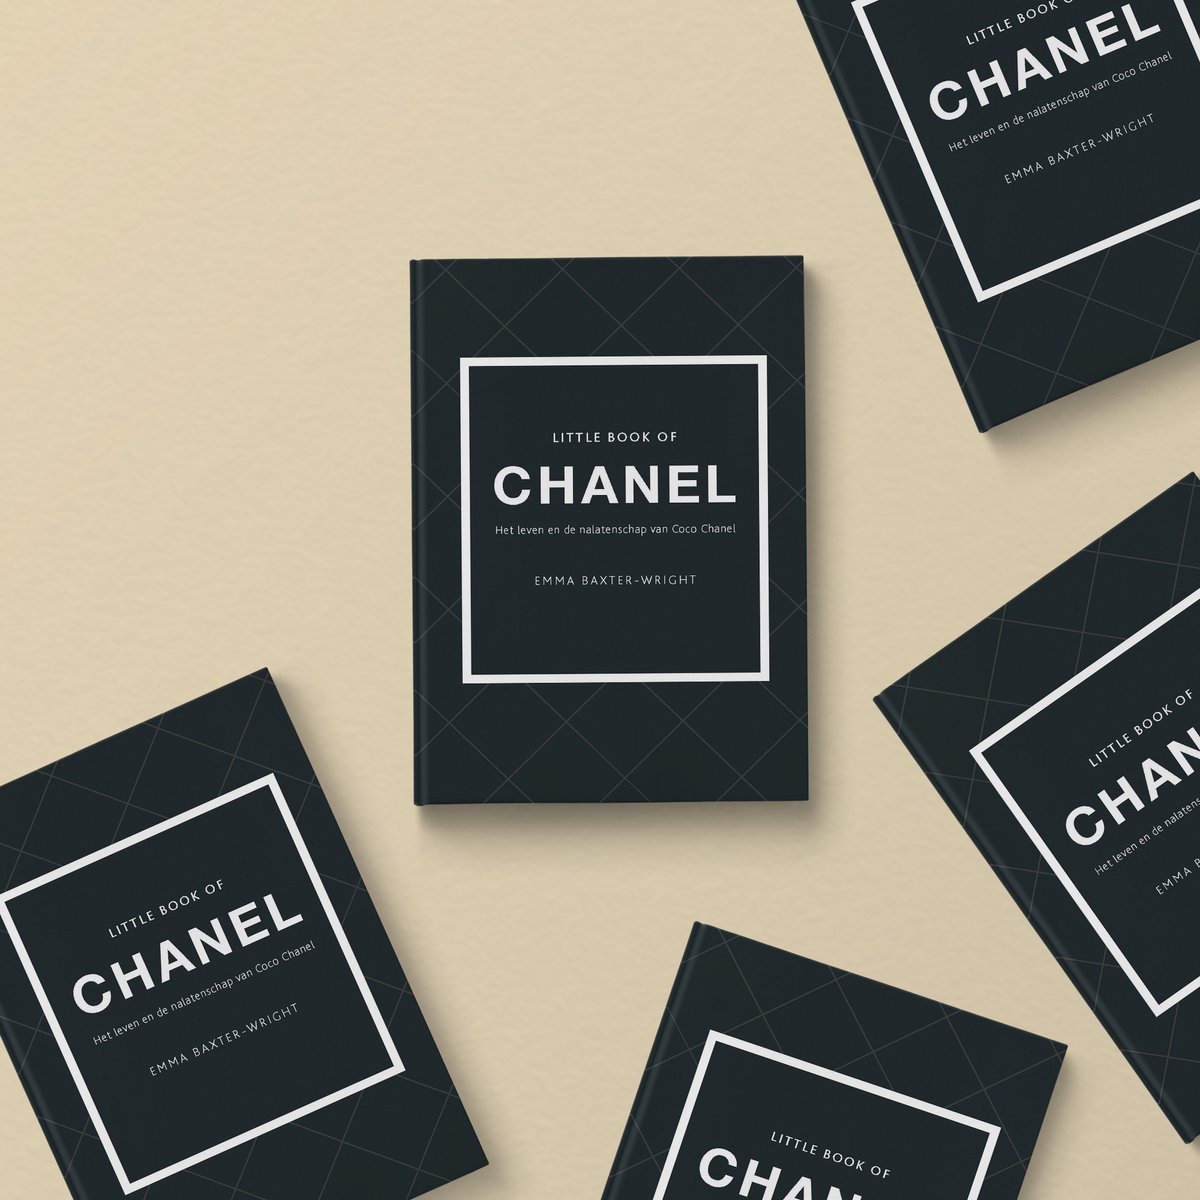 Little Book of Chanel, Emma Baxter-Wright, 9789021571980, Boeken